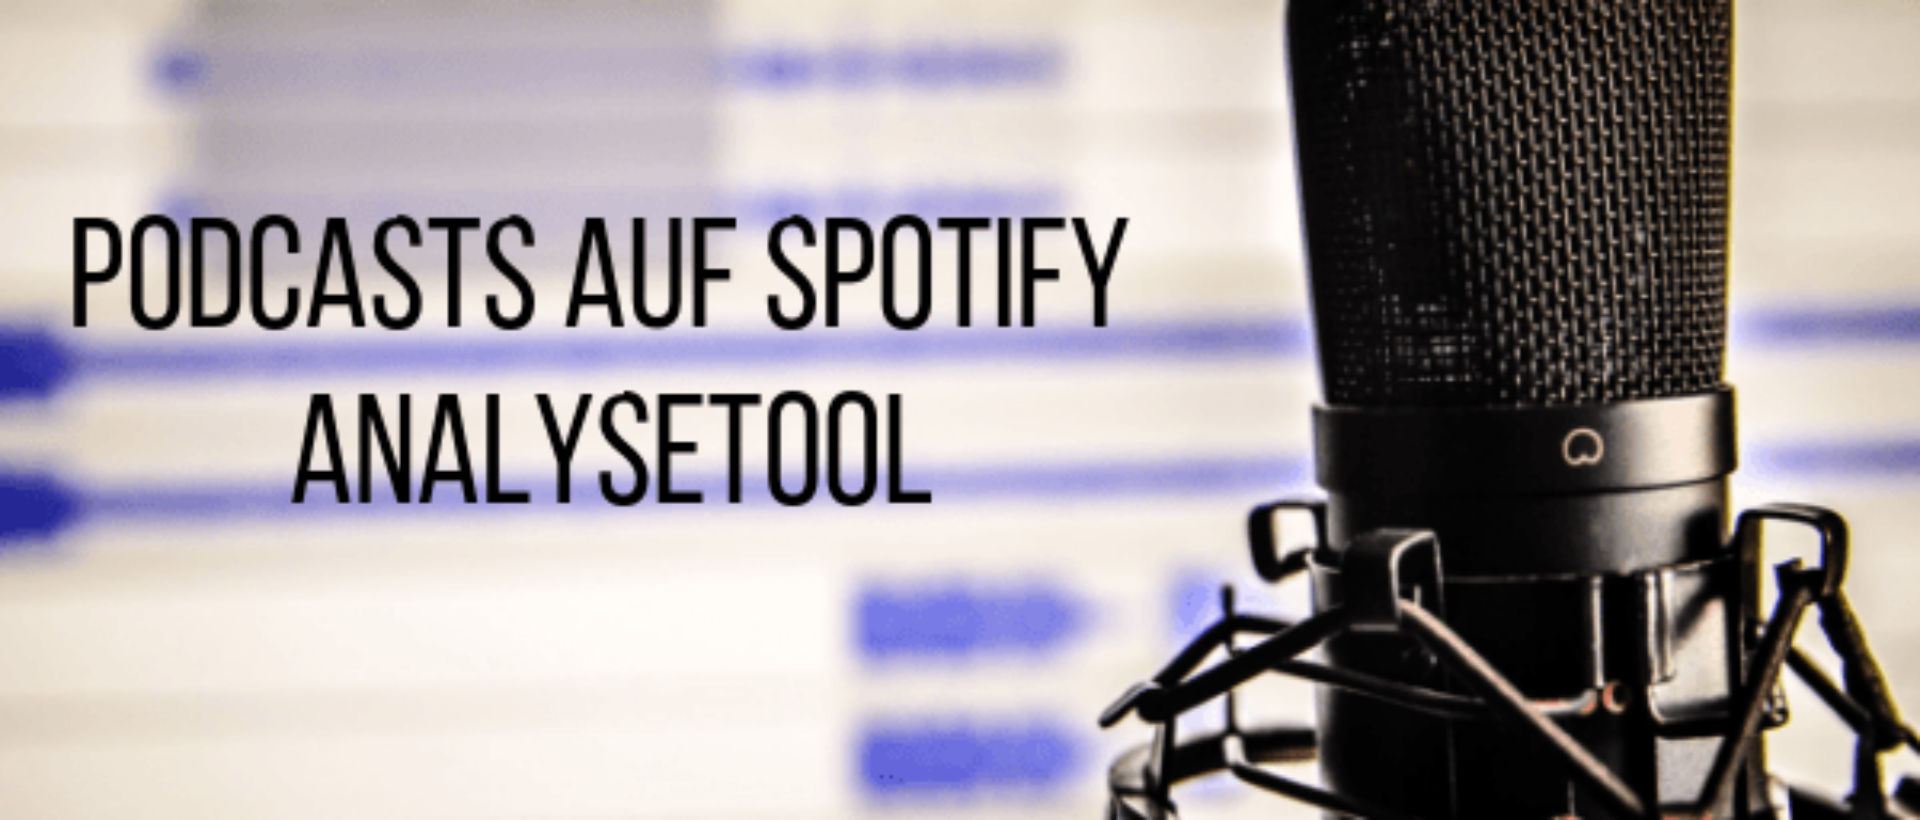 Das neue Analysetool für Podcasts auf Spotify